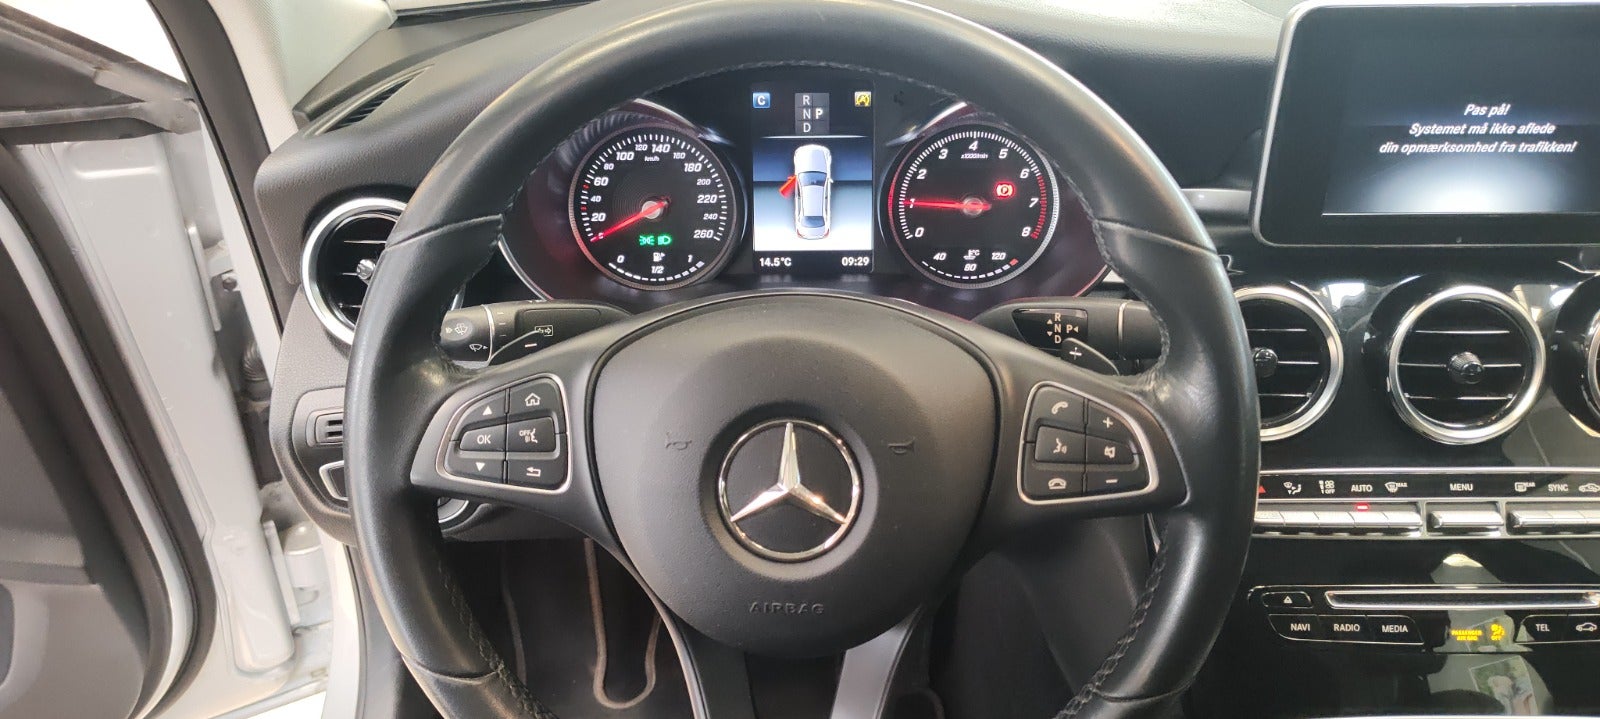 Mercedes C200 2017